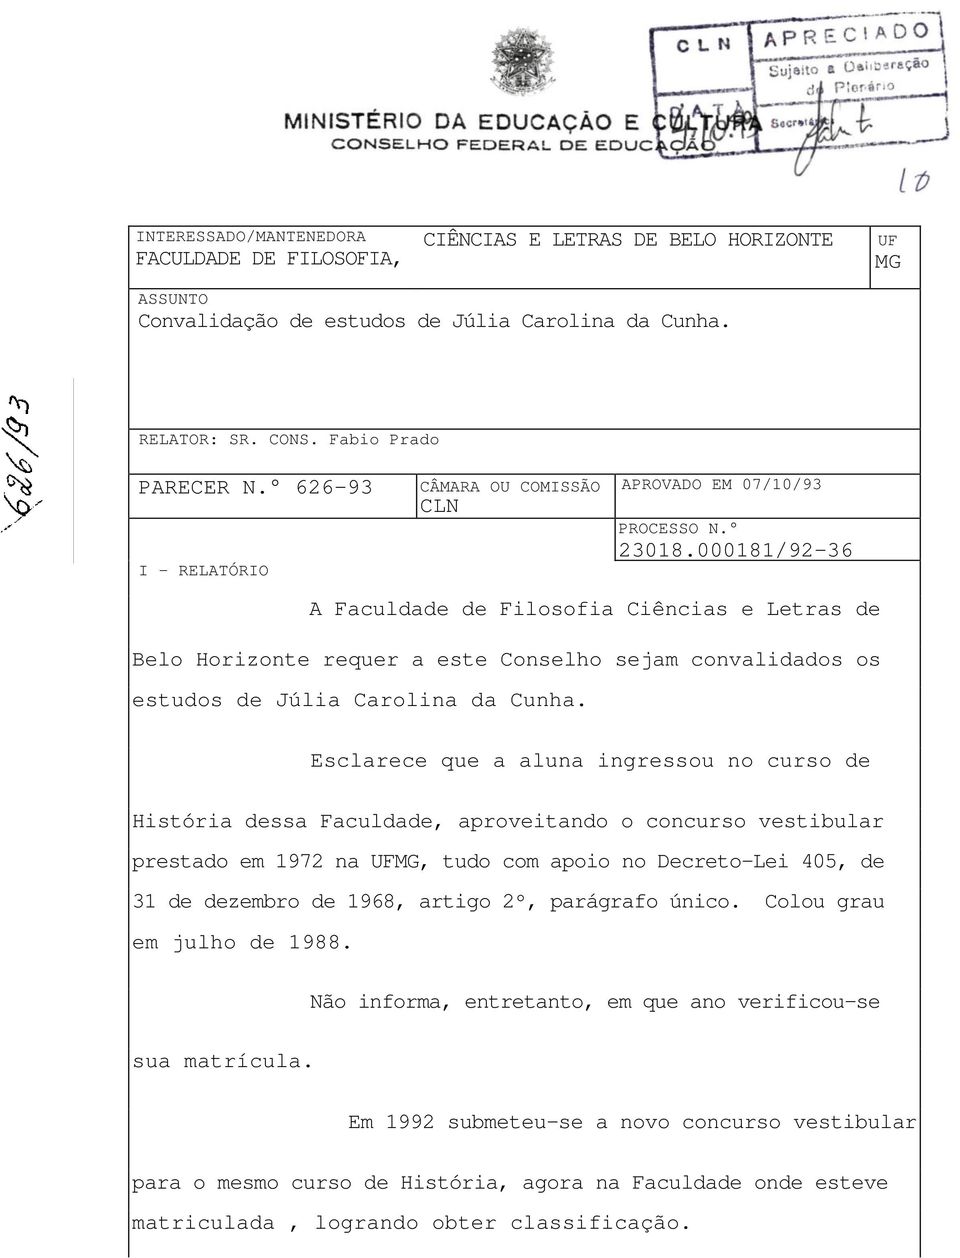 000181/92-36 A Faculdade de Filosofia Ciências e Letras de Belo Horizonte requer a este Conselho sejam convalidados os estudos de Júlia Carolina da Cunha.